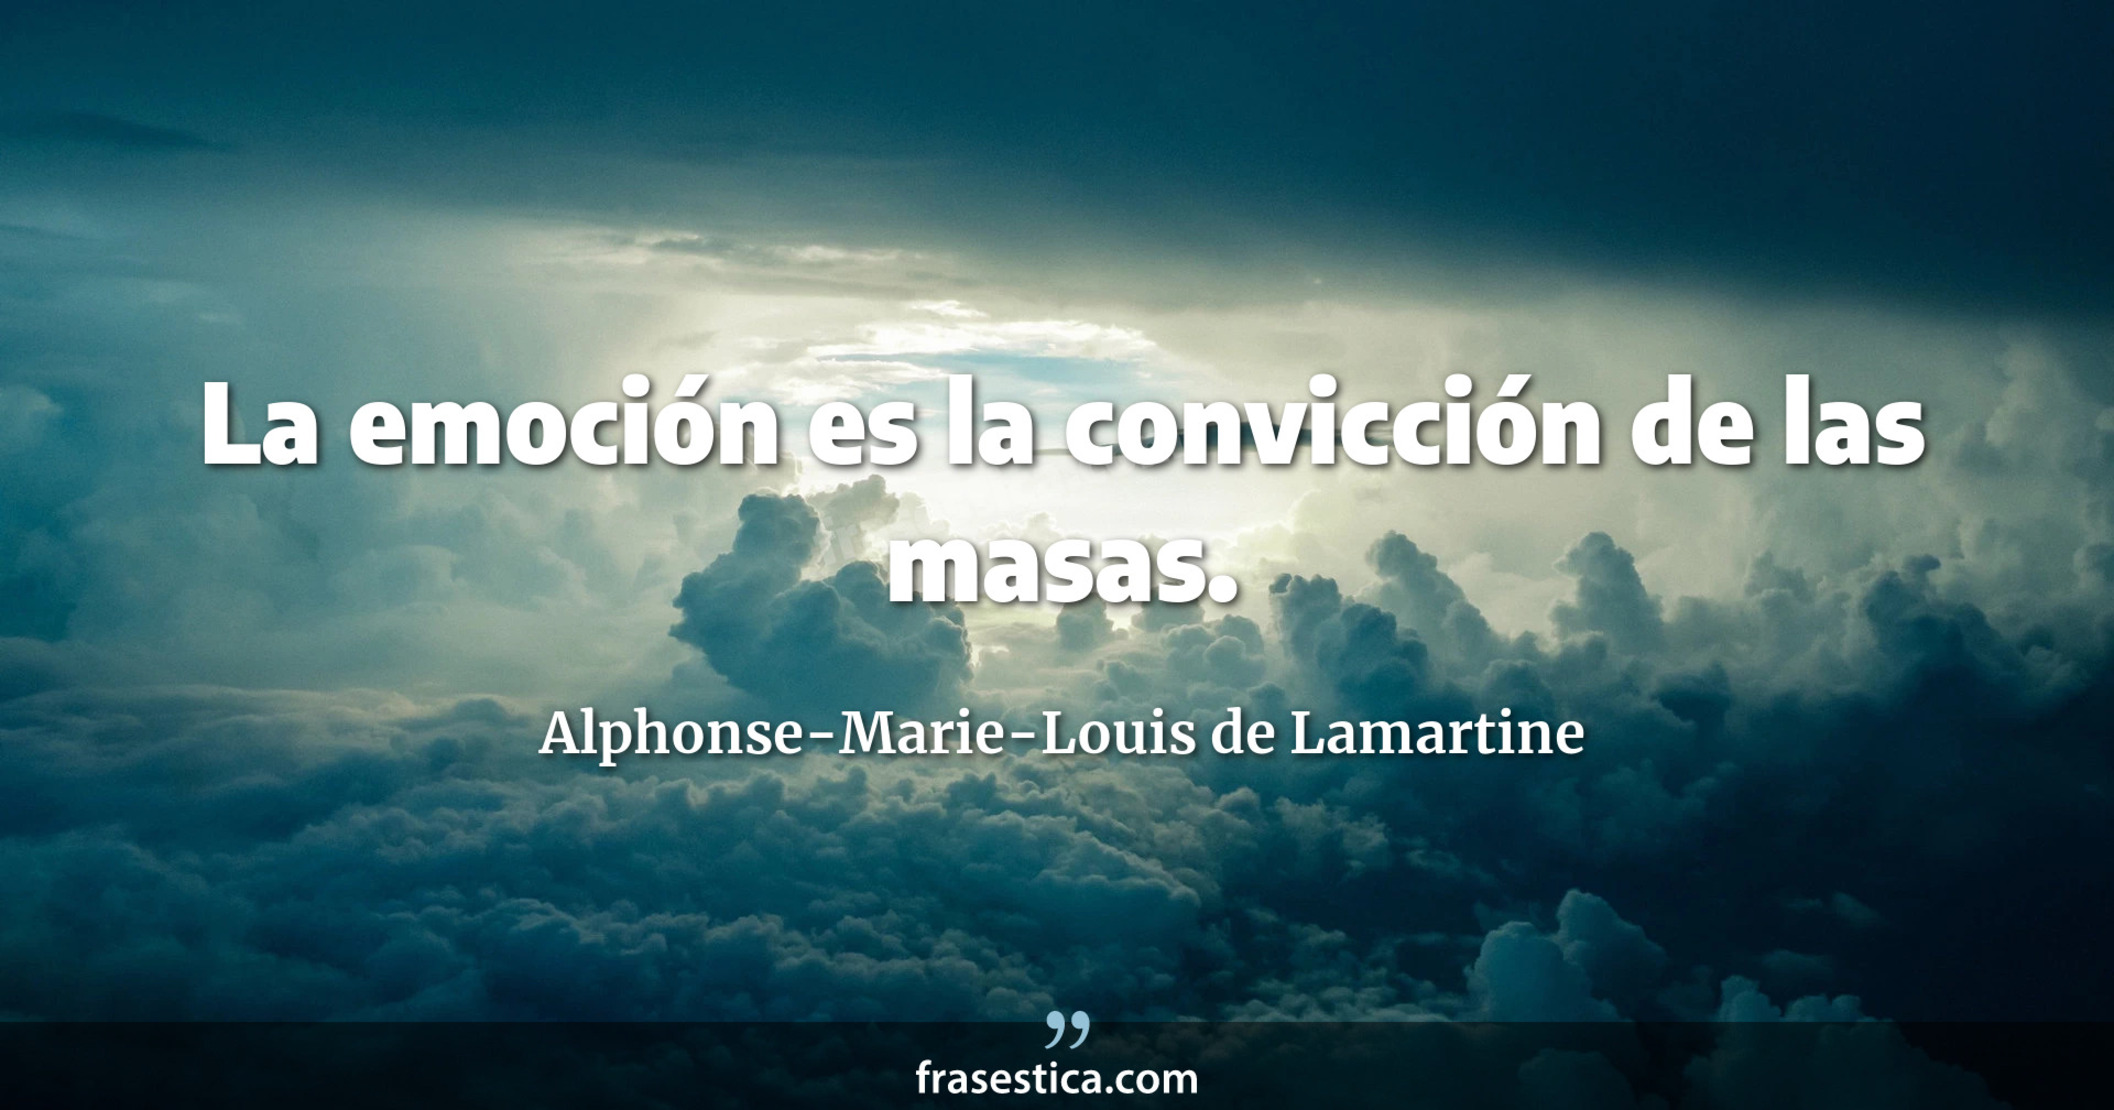 La emoción es la convicción de las masas. - Alphonse-Marie-Louis de Lamartine